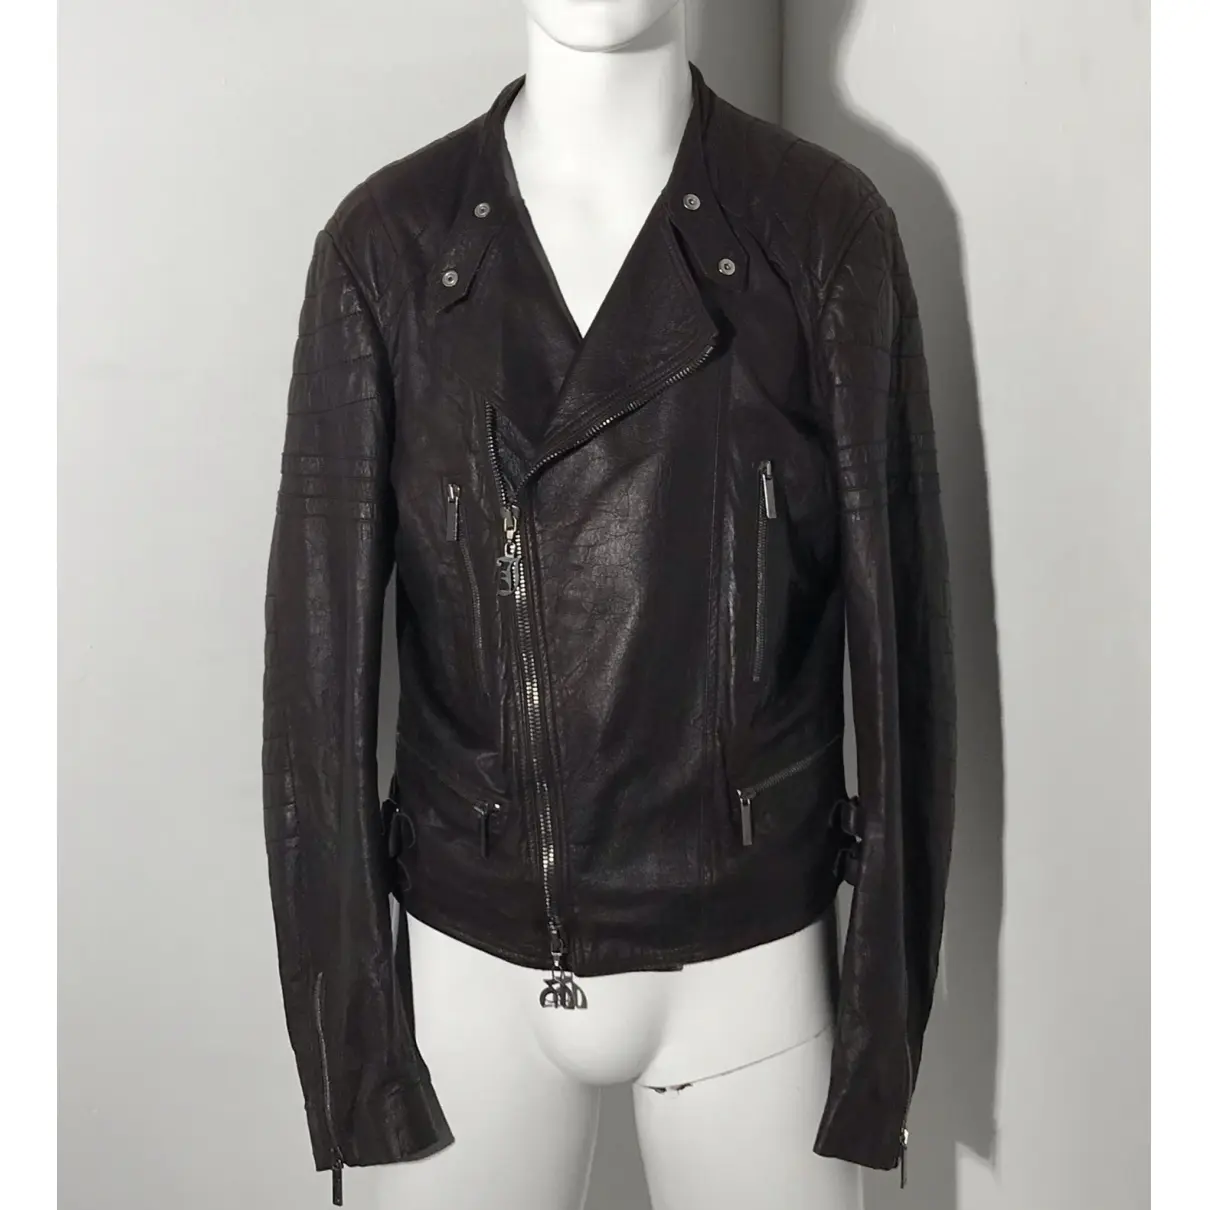 Buy John Galliano Leather jacket online